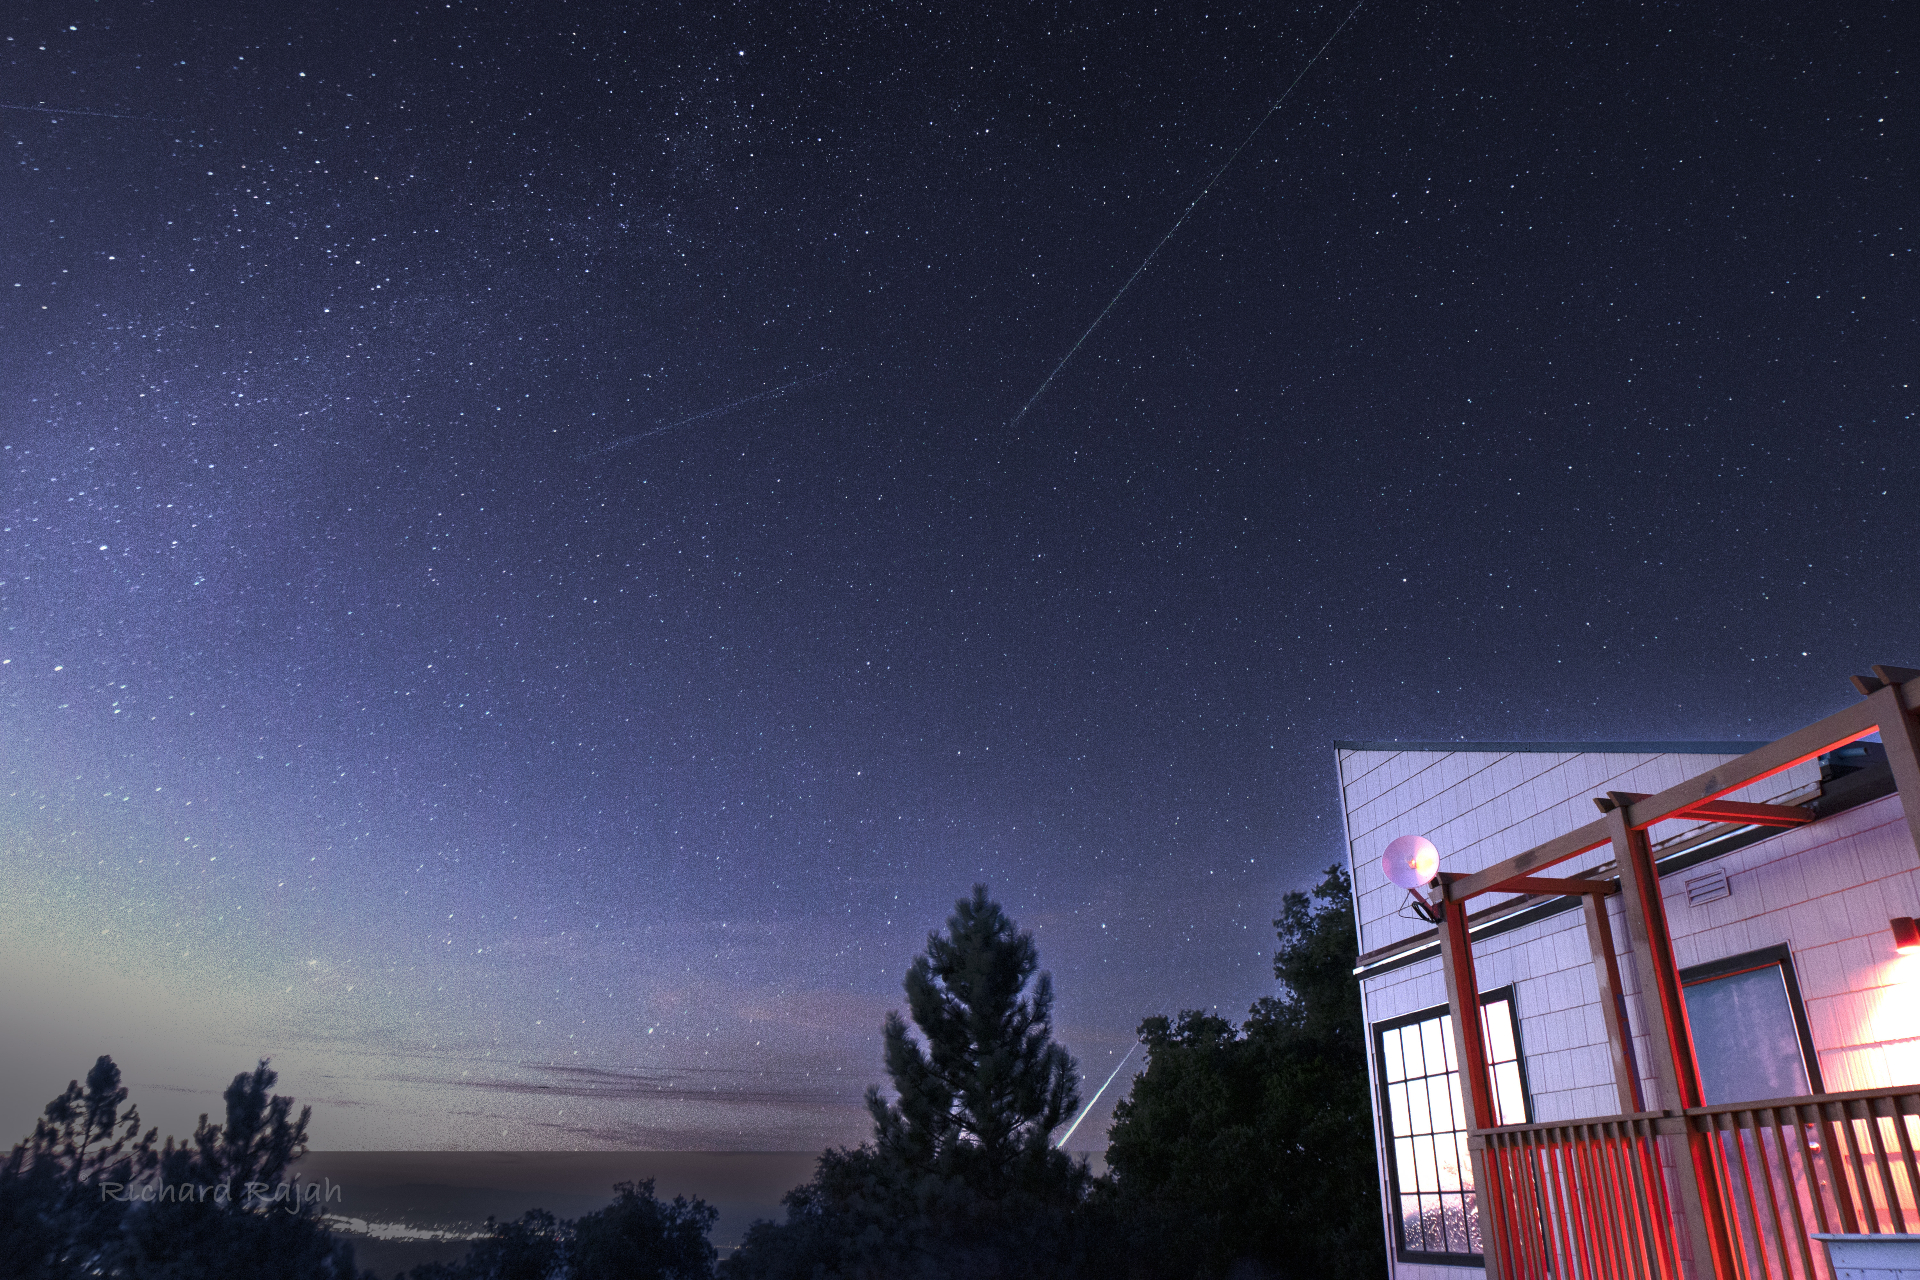 Le meteore sfrecciano nel cielo e una brillante palla di fuoco striscia dietro gli alberi nella parte inferiore dell'immagine.  Un edificio illuminato è a destra della foto.